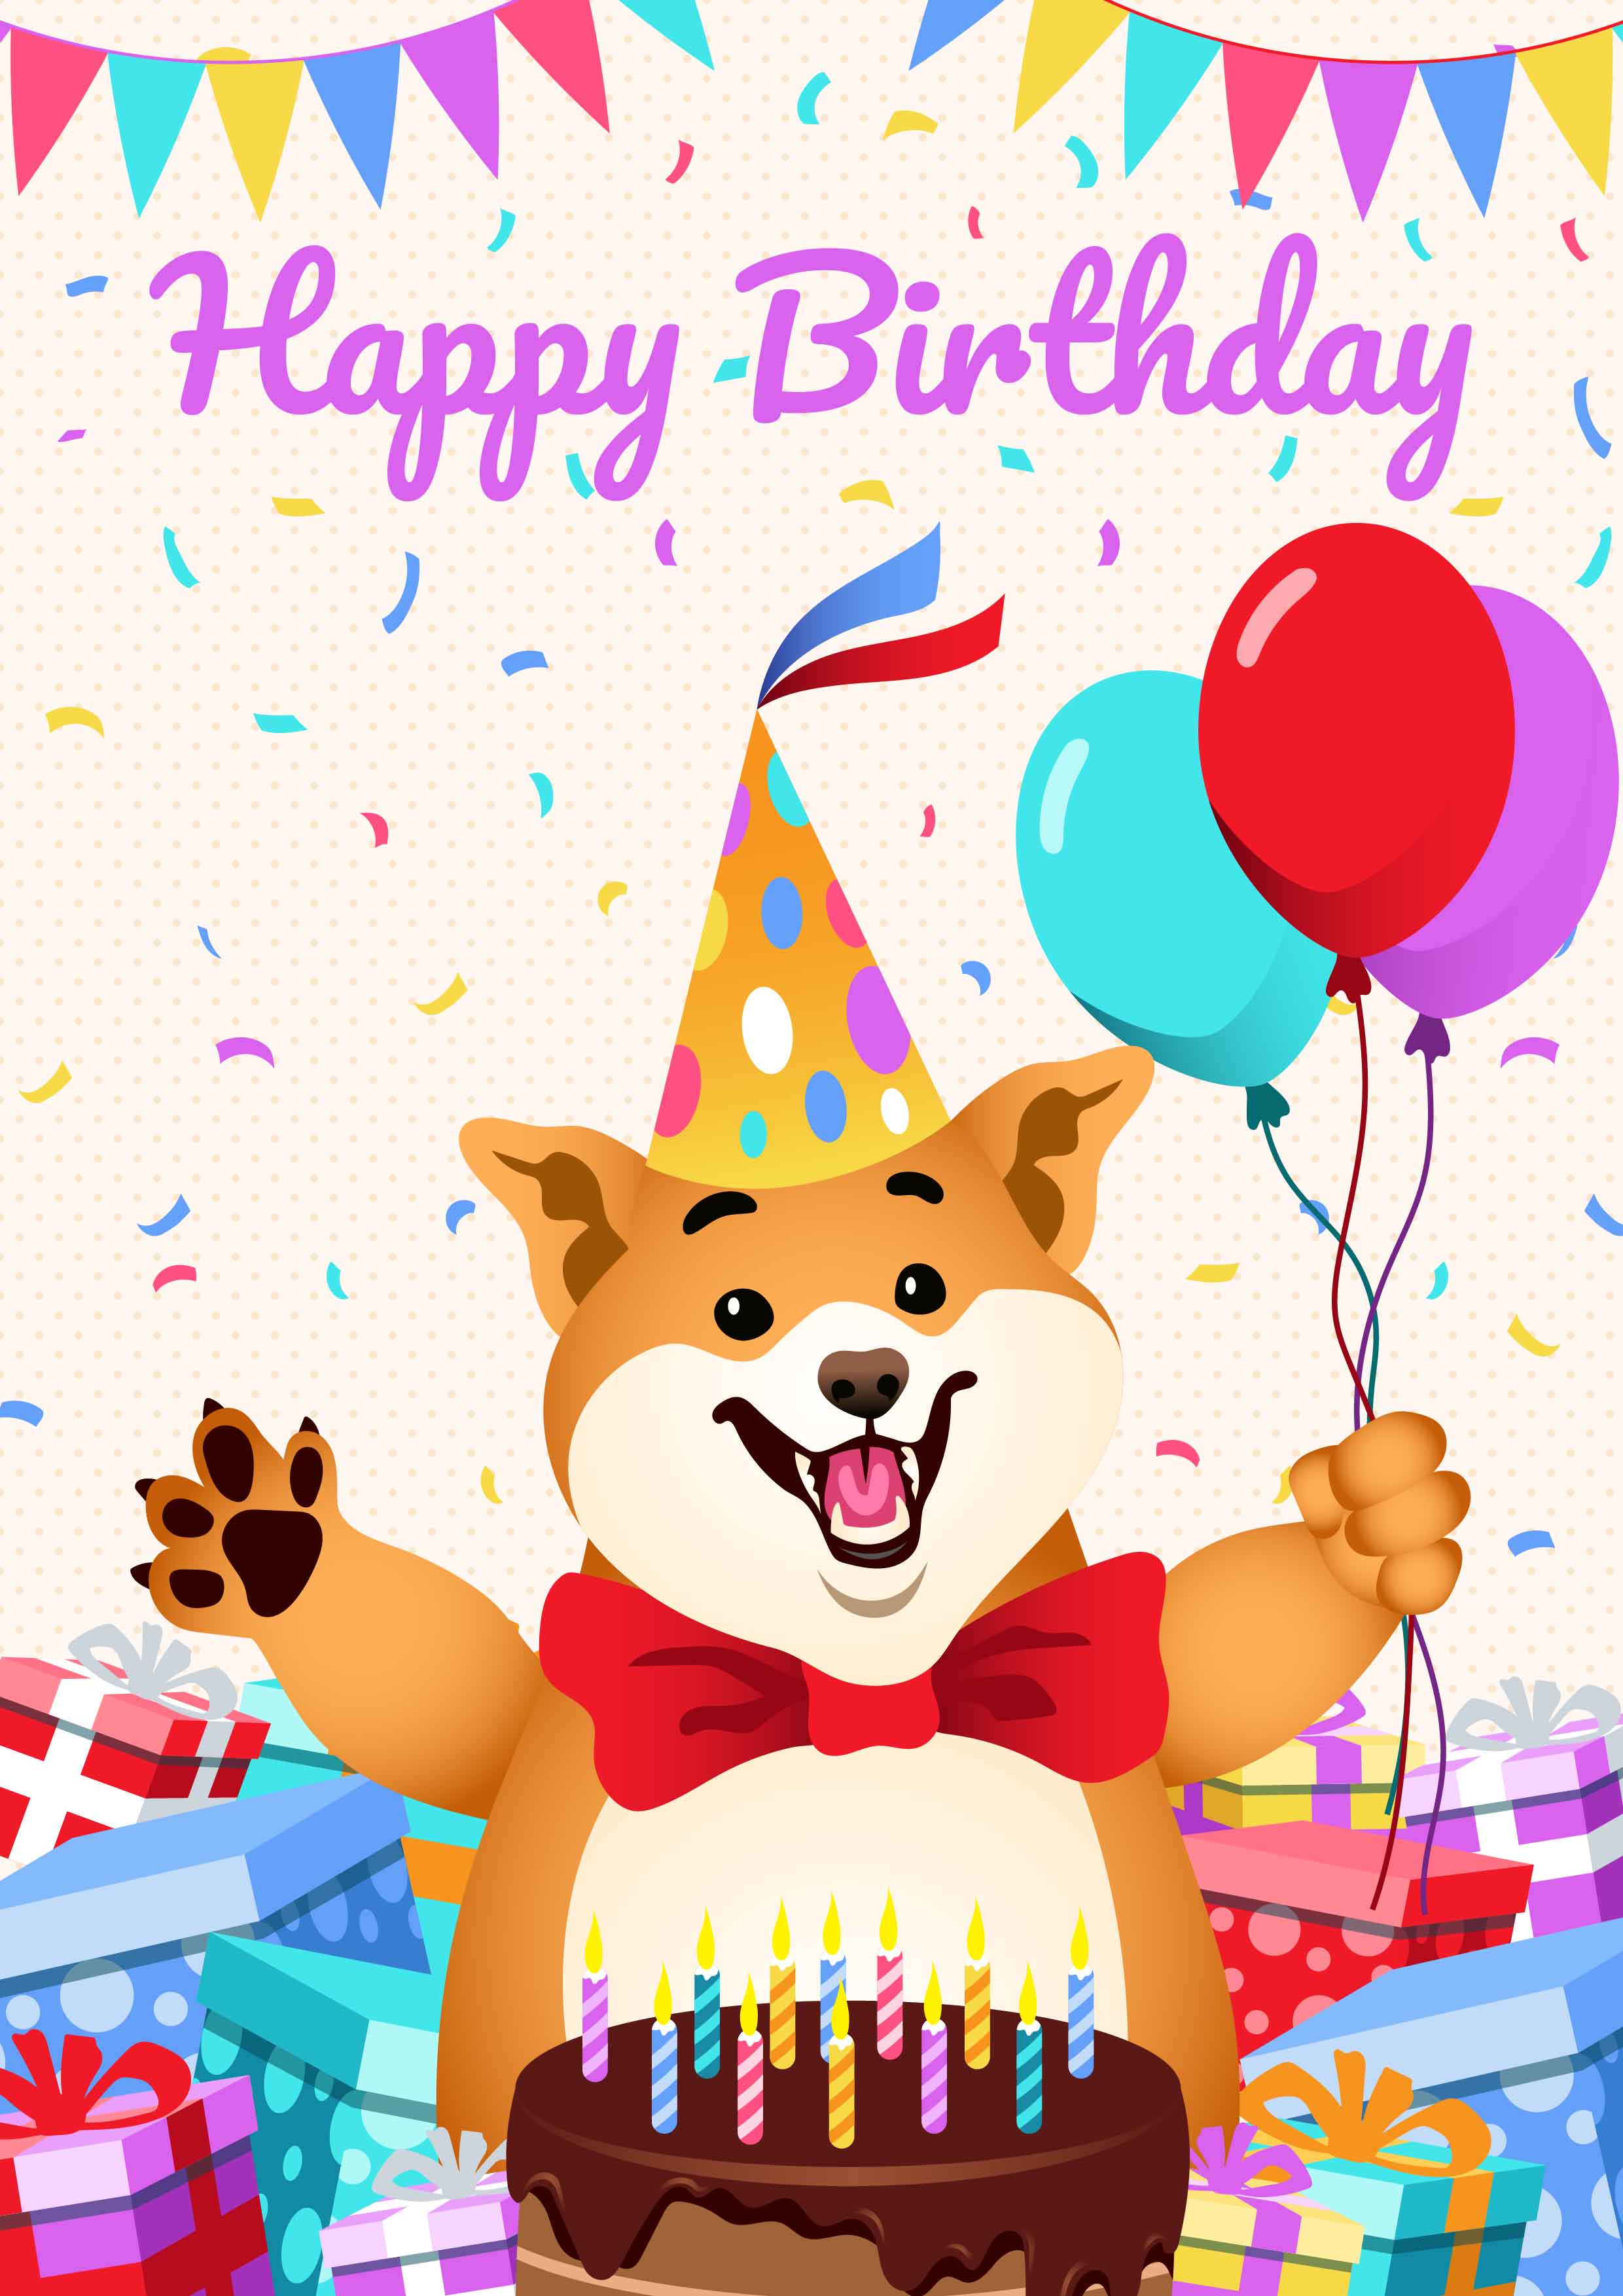 Download Happy Birthday Animals - Download Free Vectors, Clipart Graphics & Vector Art